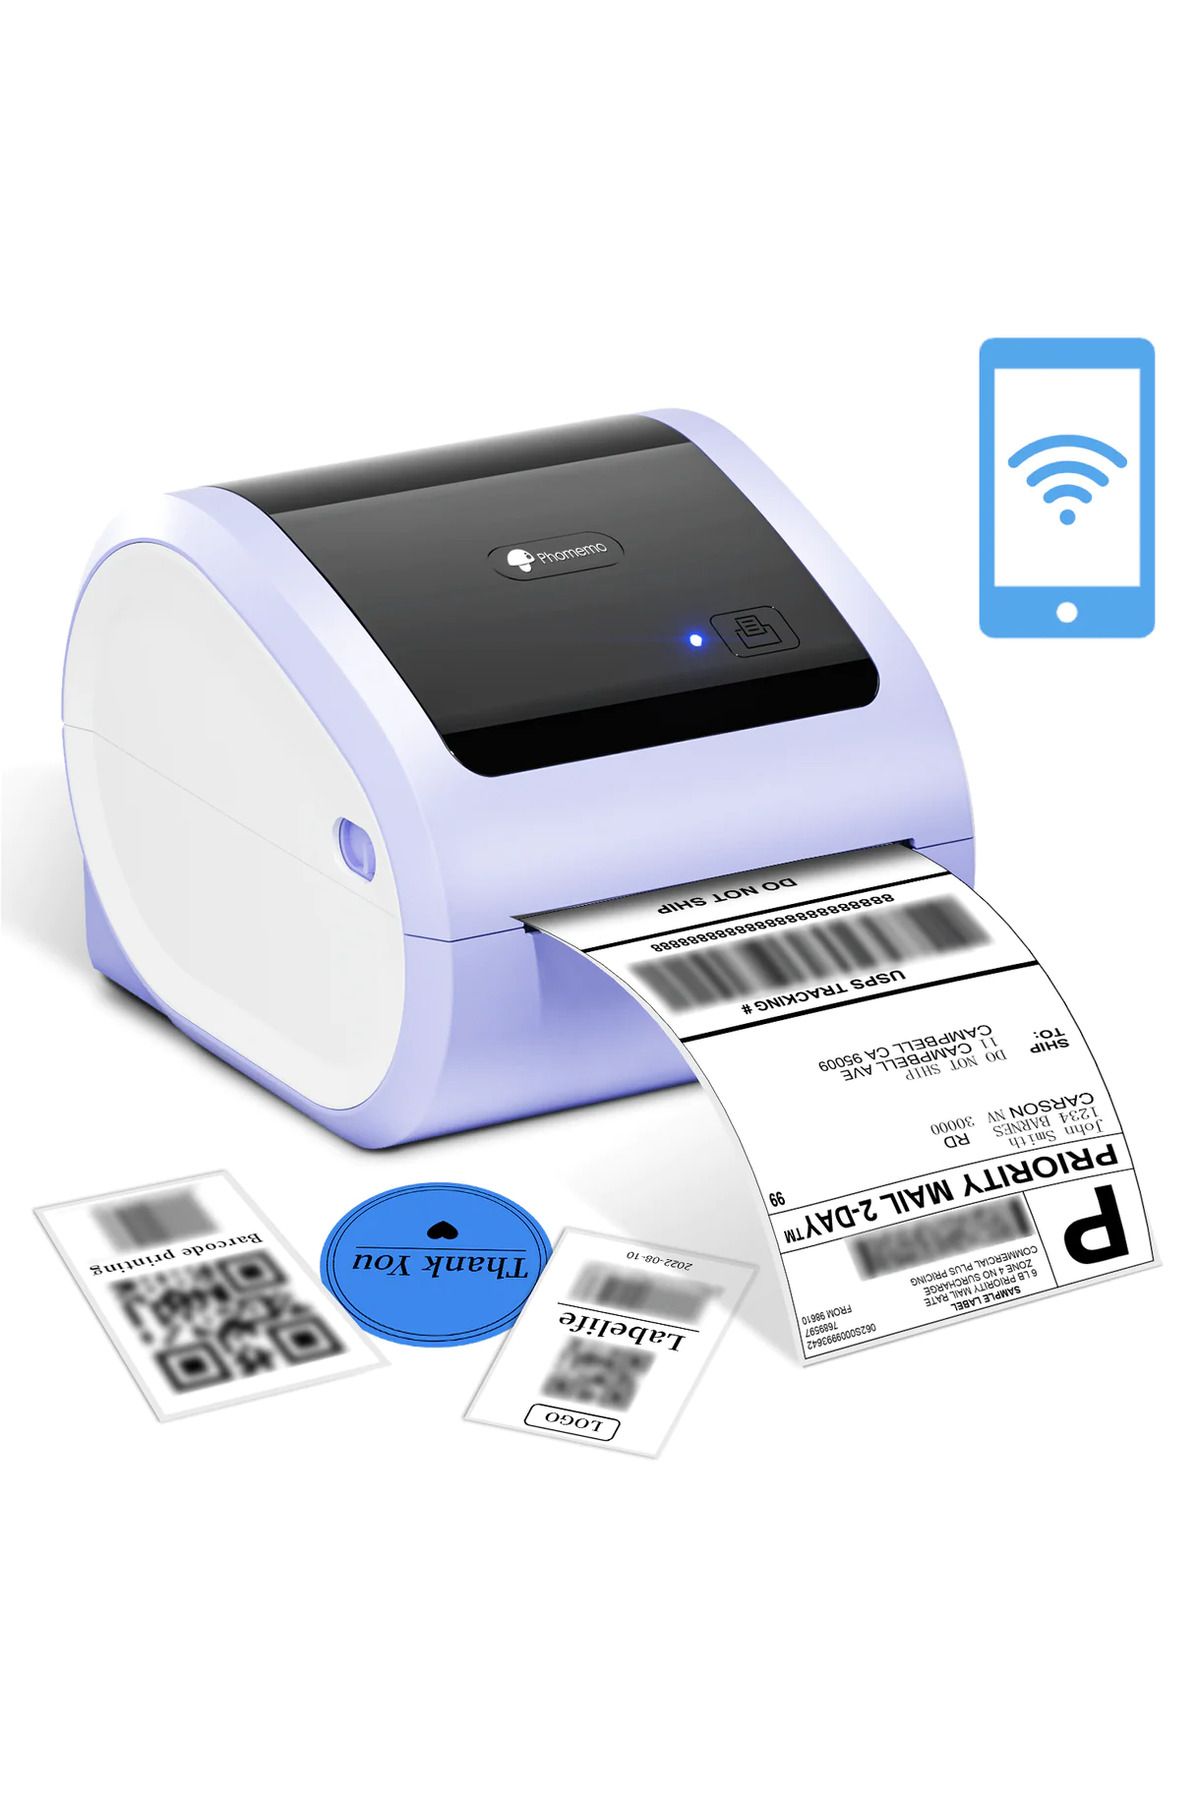 Phomemo D520-BT Bluetooth+USB Termal Yazıcı - Mor - Barkod/Adres/Posta Etiketi, Pazaryerleri İle Uyumlu